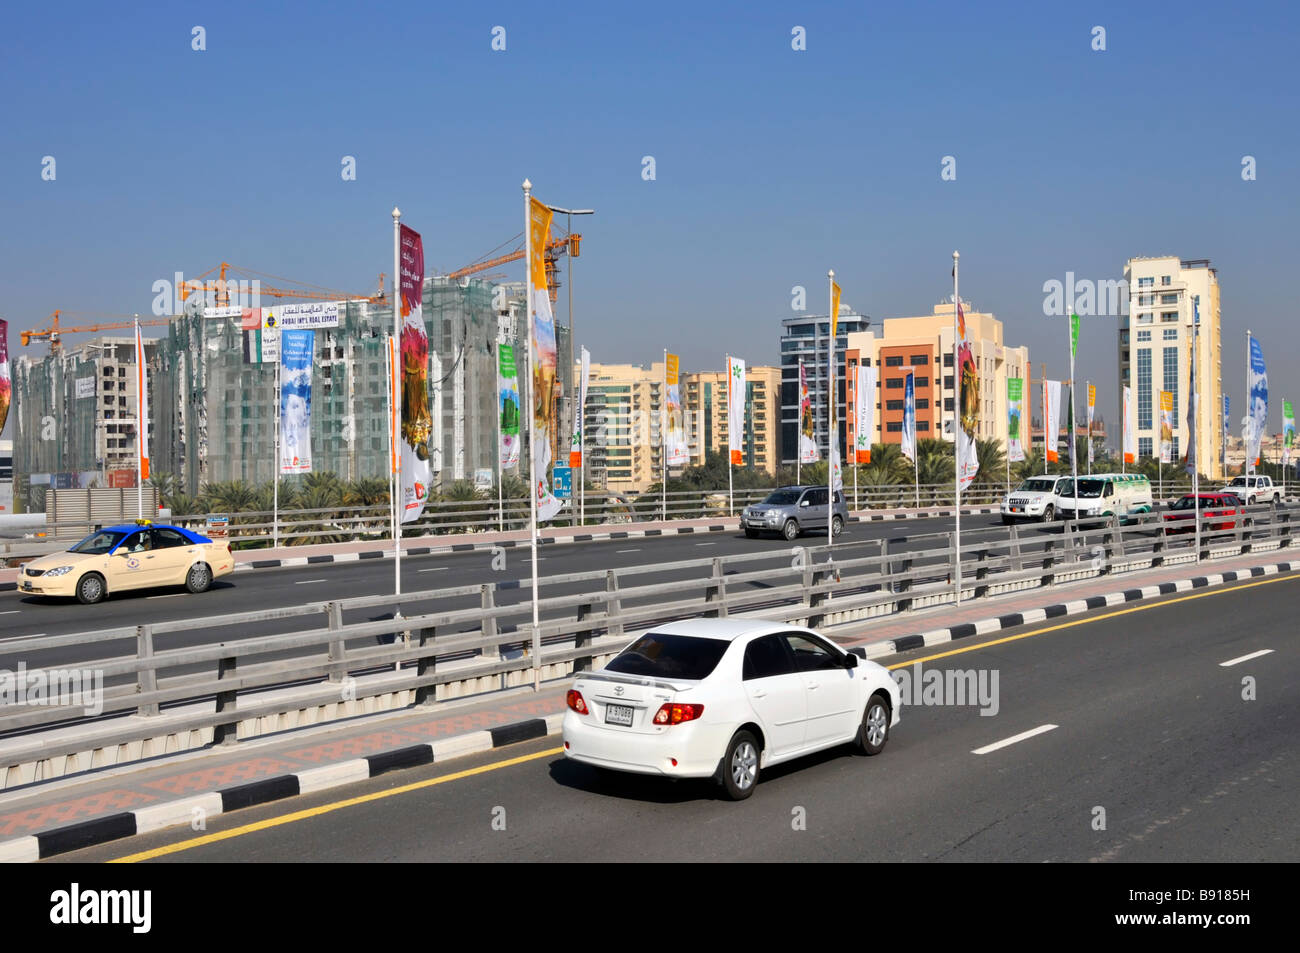 Paysage urbain de Dubaï, vue sur le bas depuis le dessus de l'autoroute moderne Infrastructures de transport routier avec circulation fluide Émirats arabes Unis EAU Banque D'Images